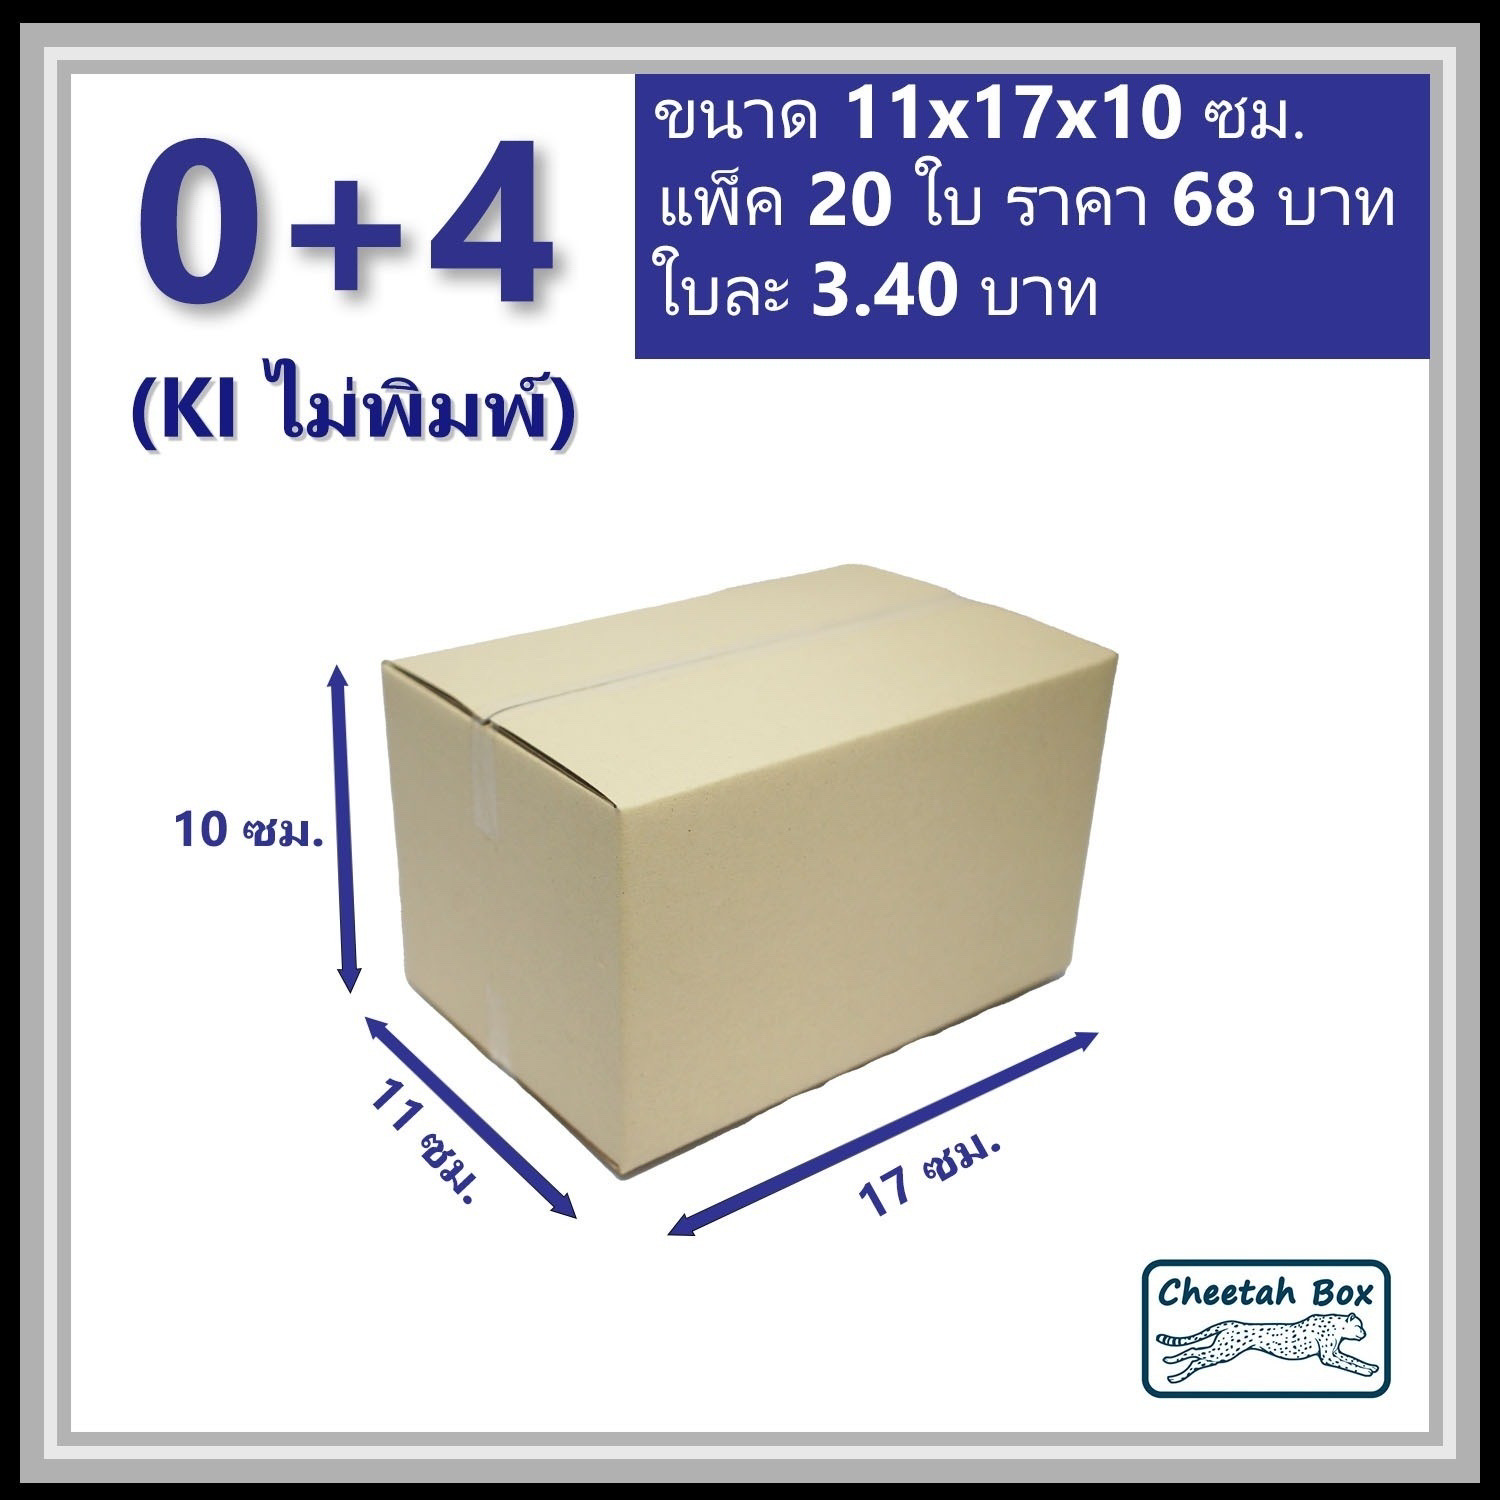 กล่องพัสดุ 0+4 ไม่พิมพ์ (Post Box) ลูกฟูก 3 ชั้น ขนาด 11W x 17L x 10H cm.